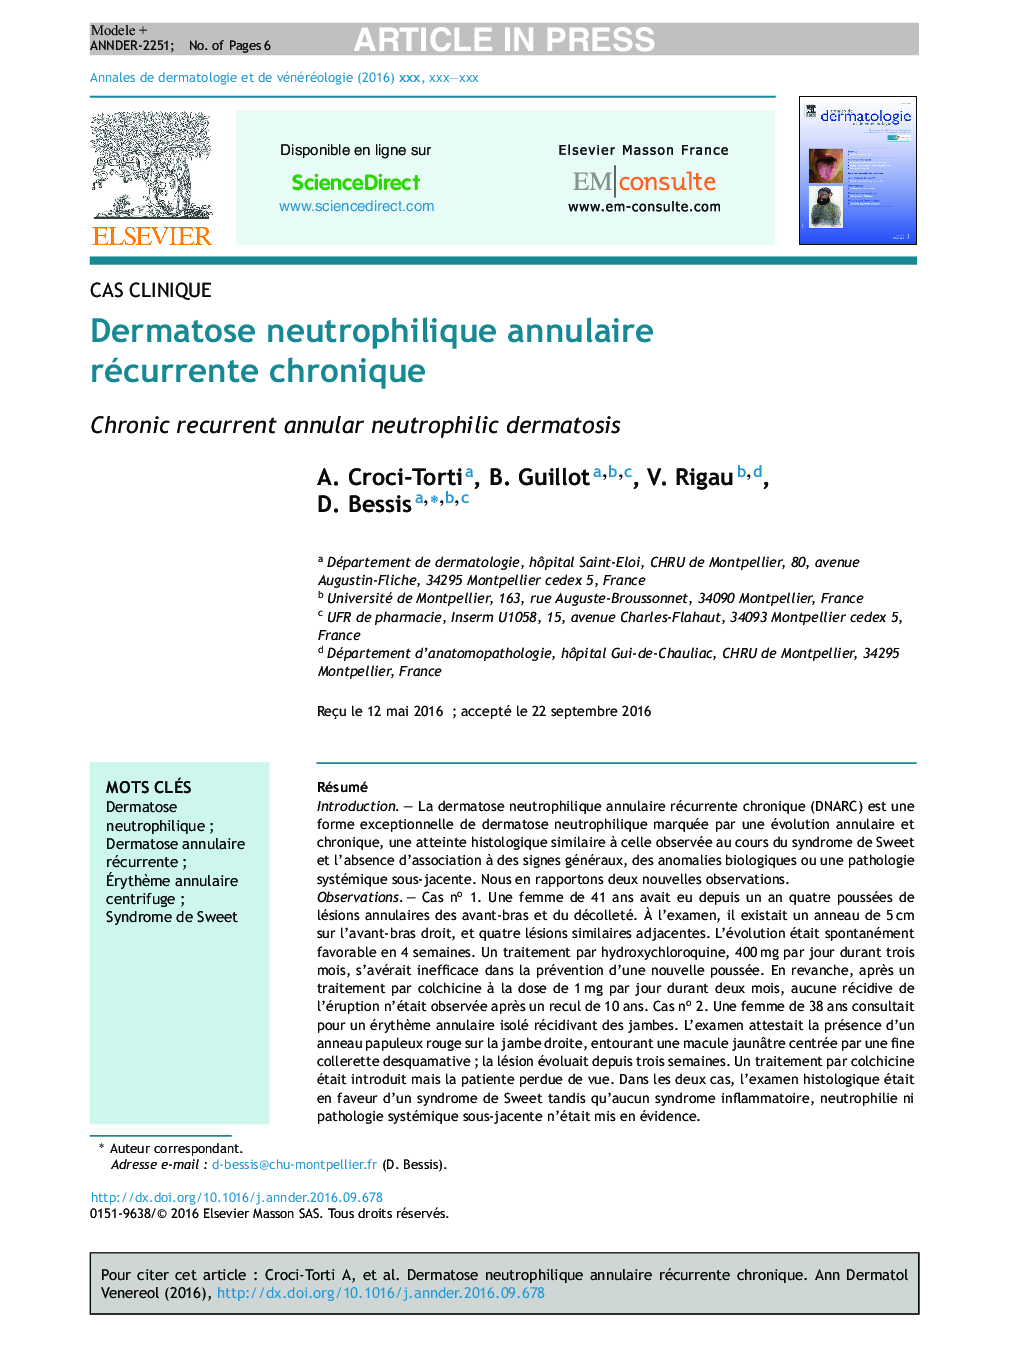 Dermatose neutrophilique annulaire récurrente chronique